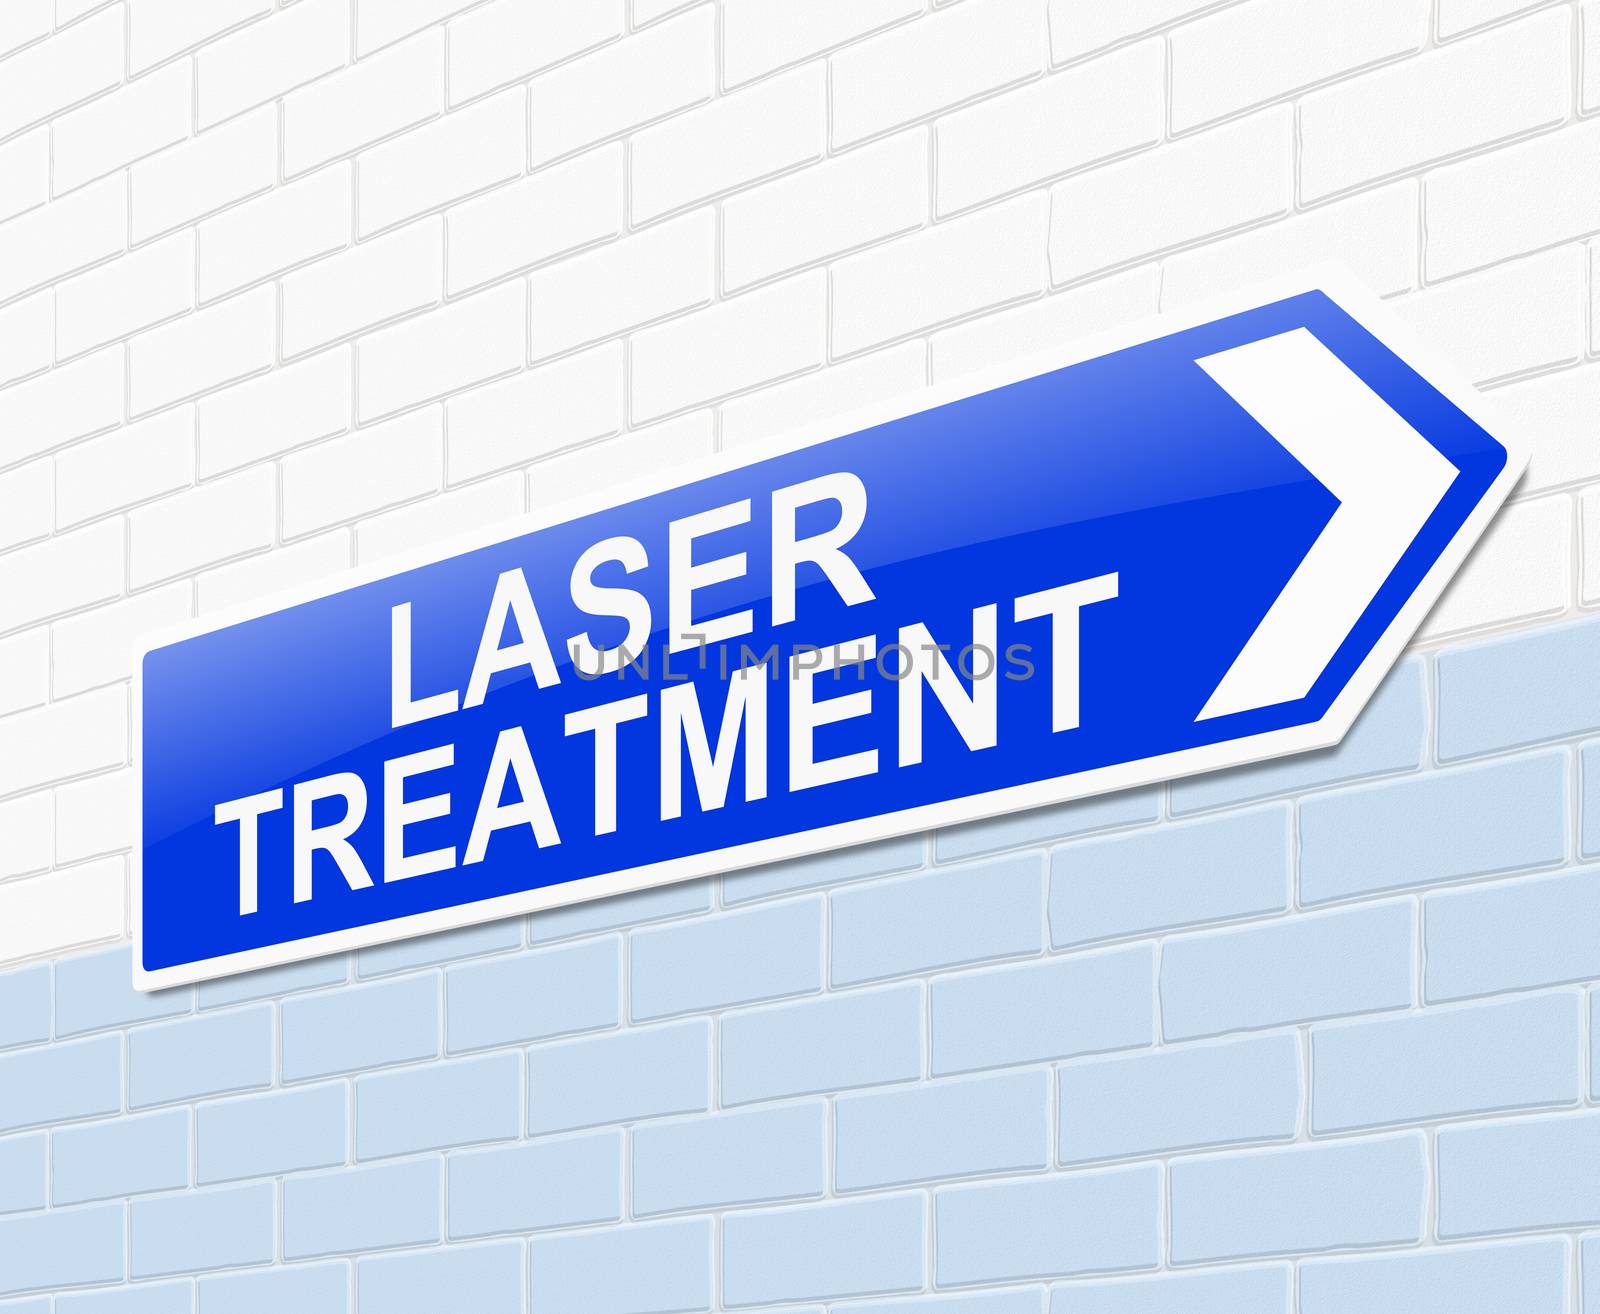 Laser treatment concept. by 72soul